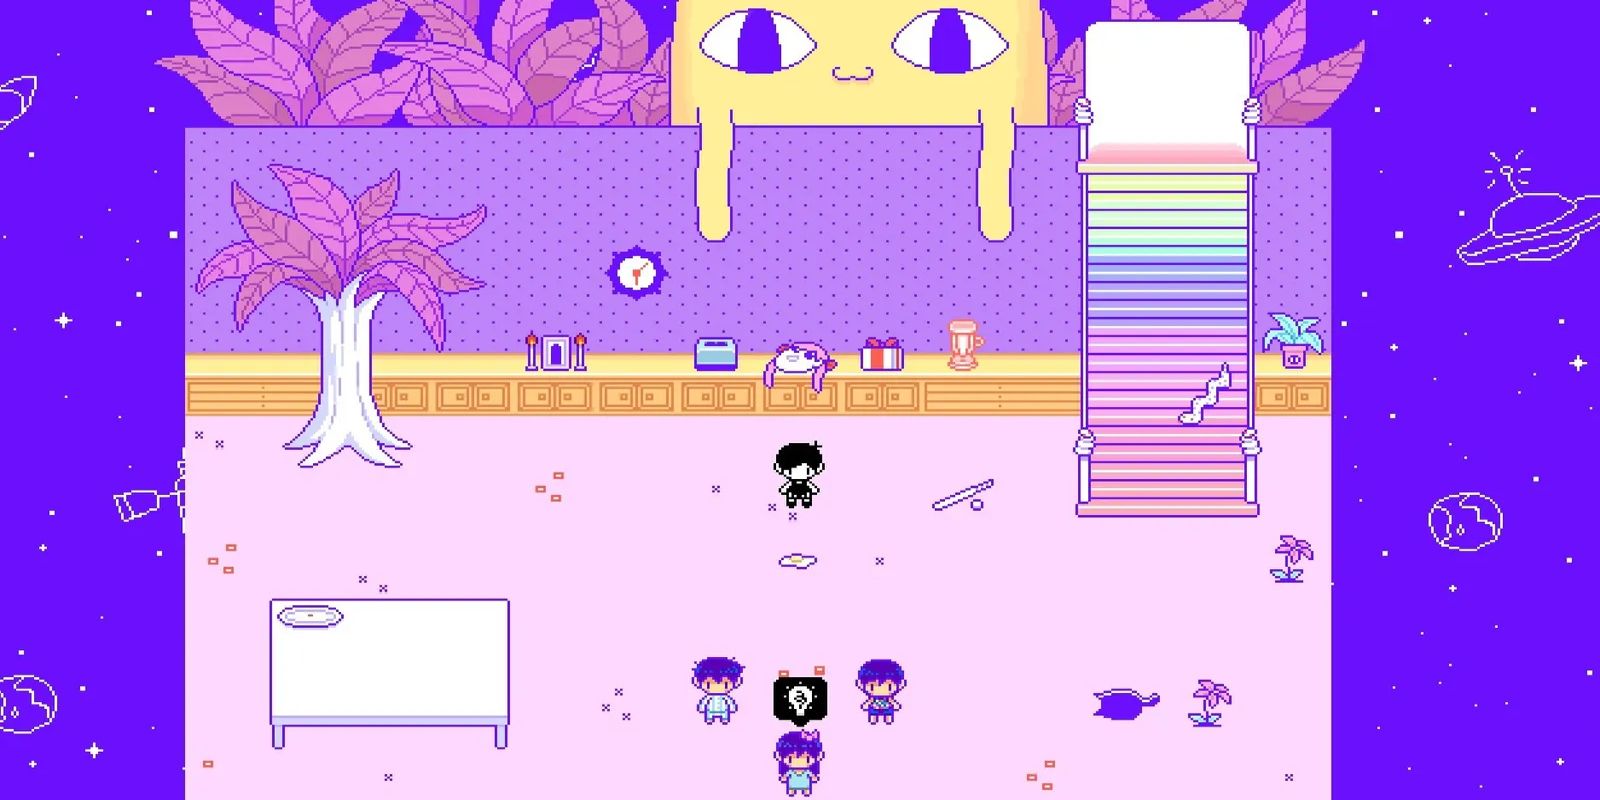 Uma captura de tela de um gato gigante olhando para as crianças em uma sala no jogo Omori.